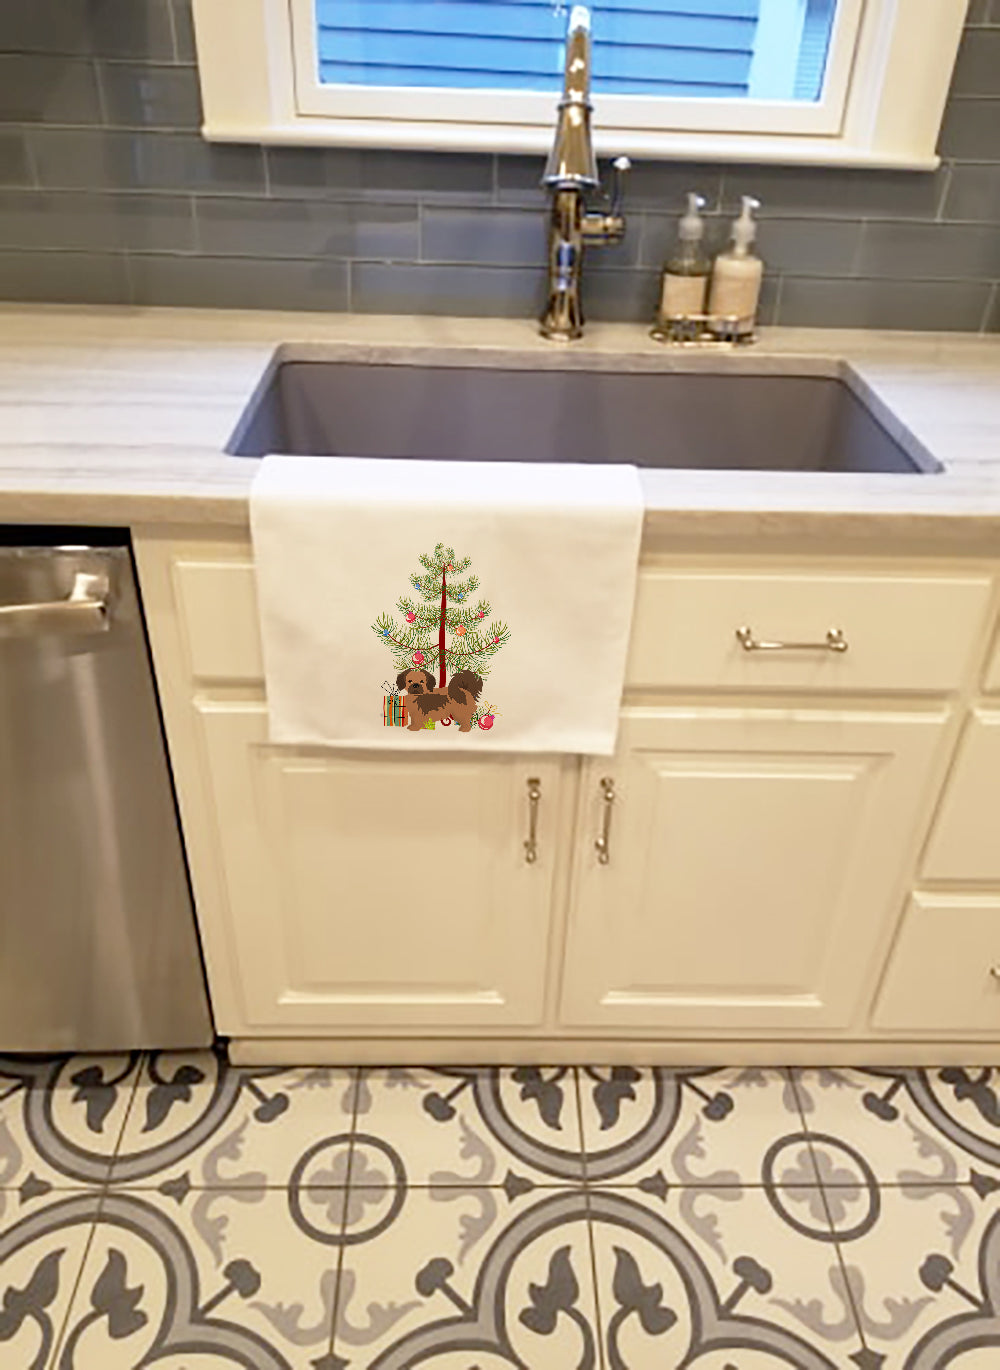 Buy this Tibetan Spaniel Christmas Tree White Kitchen Towel Set of 2